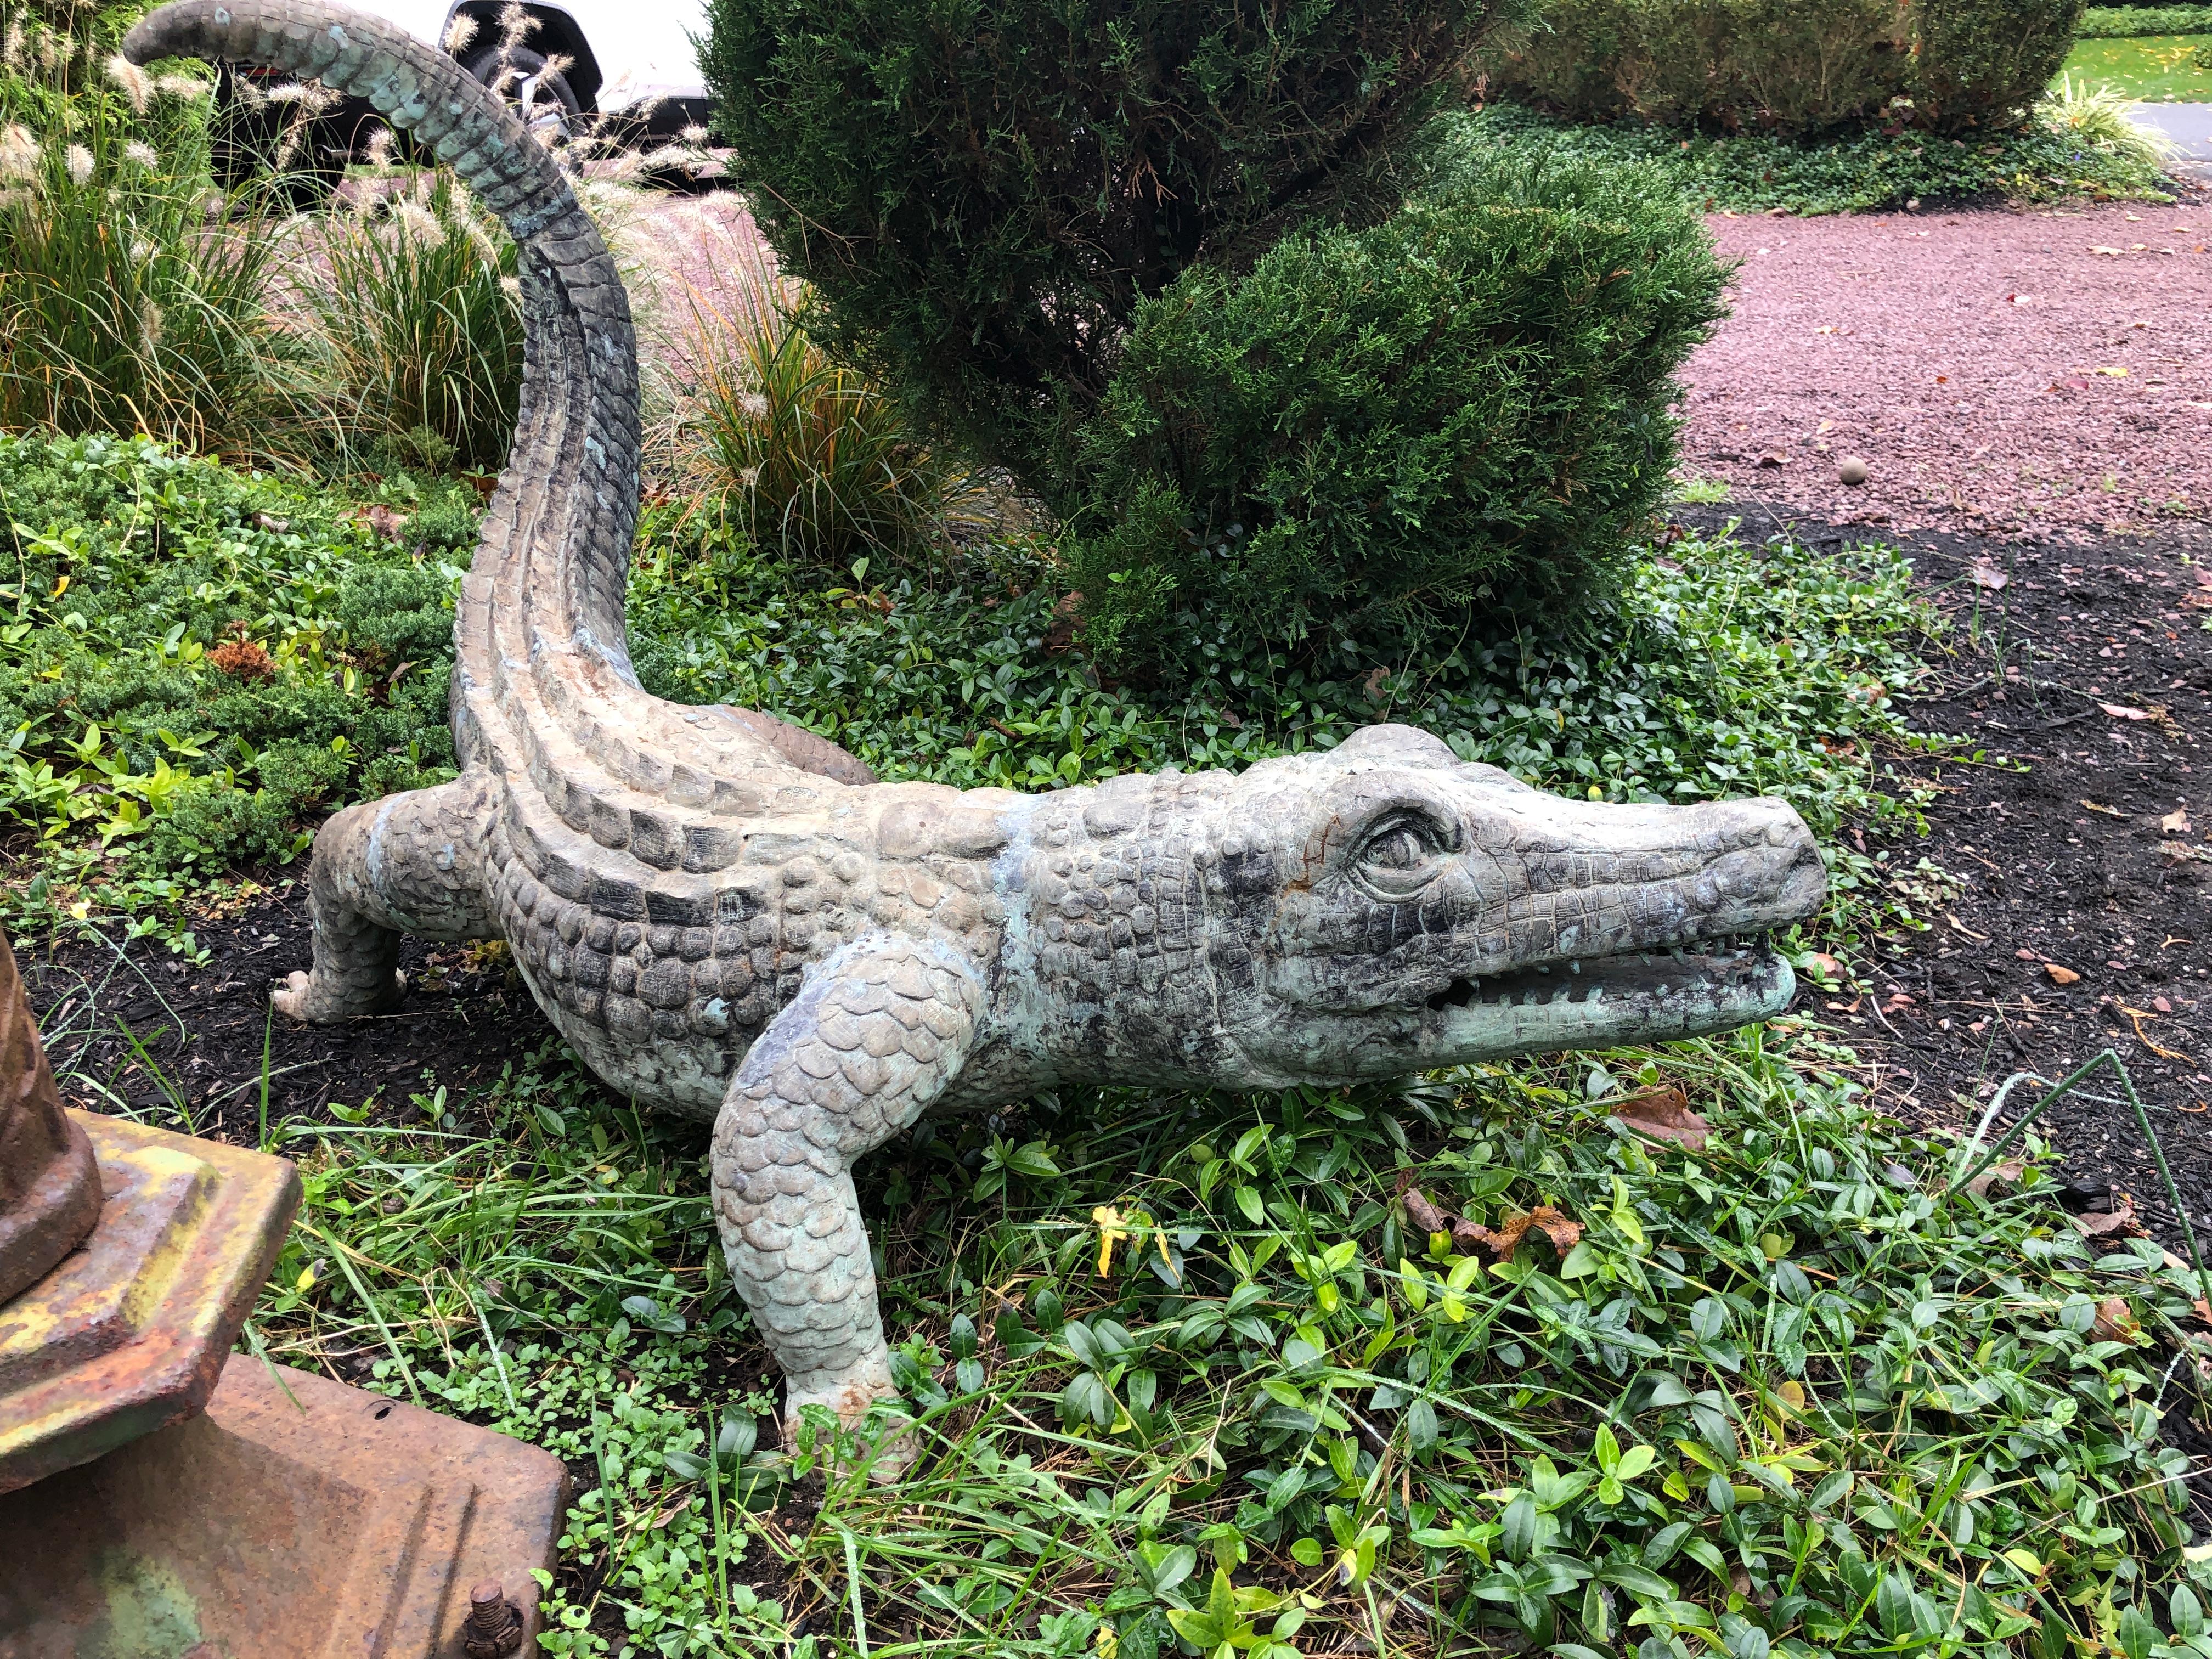 Impressionnant alligator en bronze de belle qualité avec une belle patine verte. Beau casting et belle modélisation.
Mesures : 27